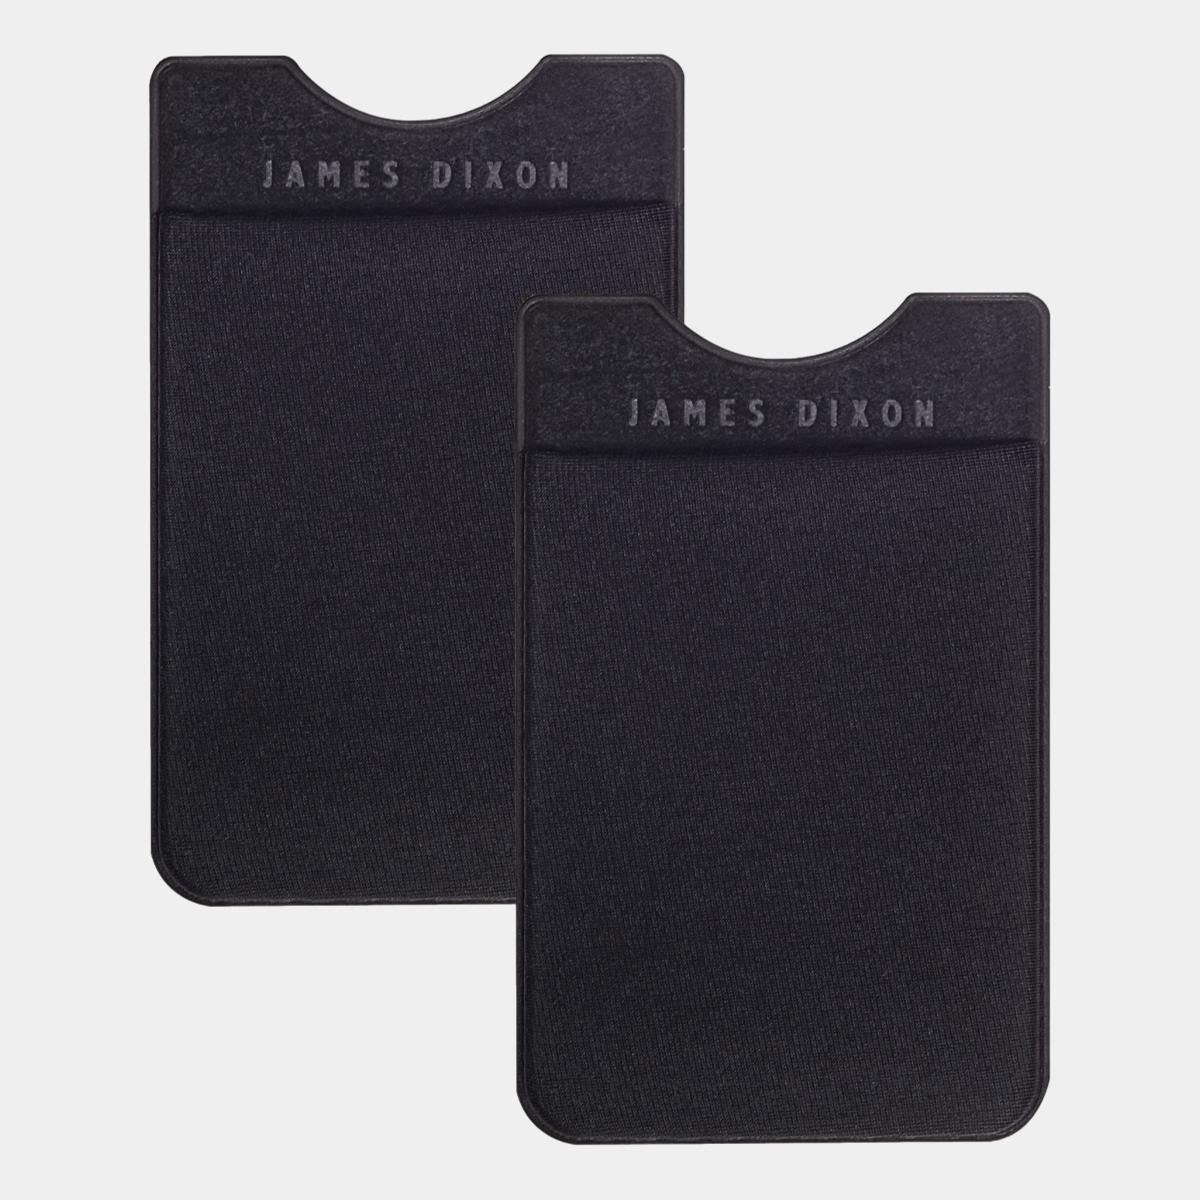 jd0069 james dixon extra cards black pocket front